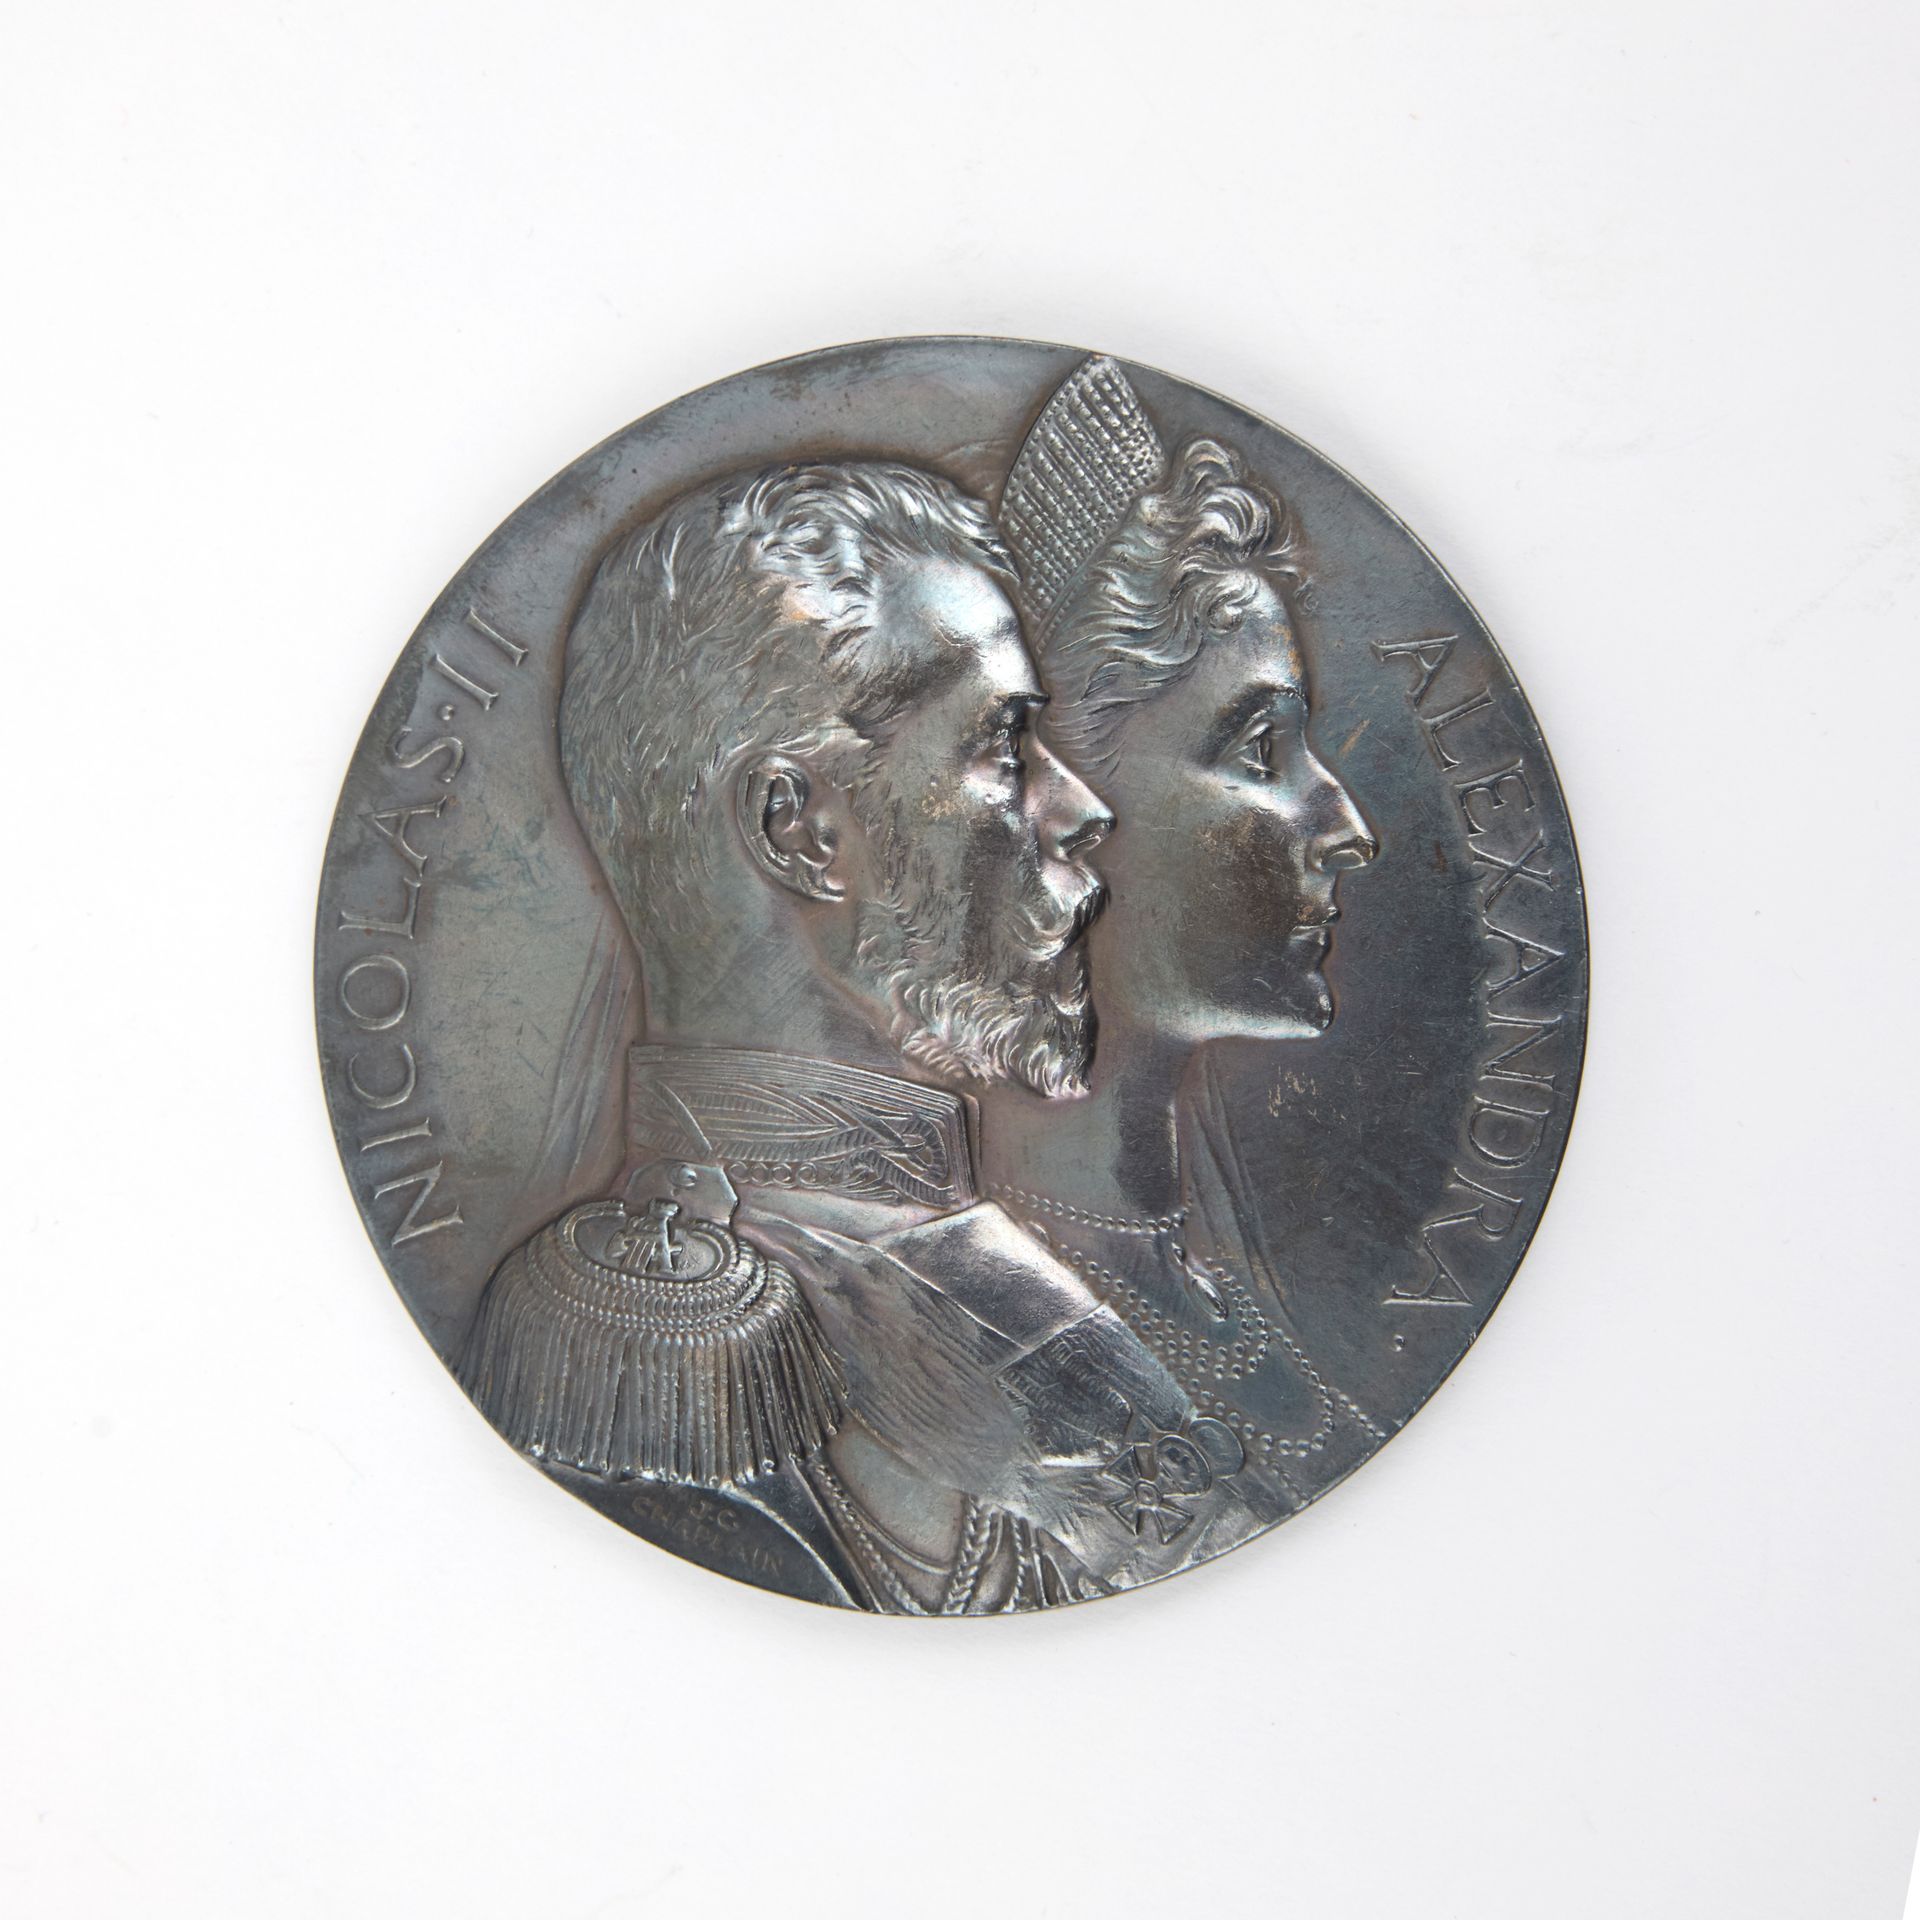 Null [法俄联盟］
这枚罕见的银质奖章由 Jules Clément Chaplain（1839-1909 年）雕刻，是为纪念尼古拉二世皇帝和亚历山德拉-费&hellip;